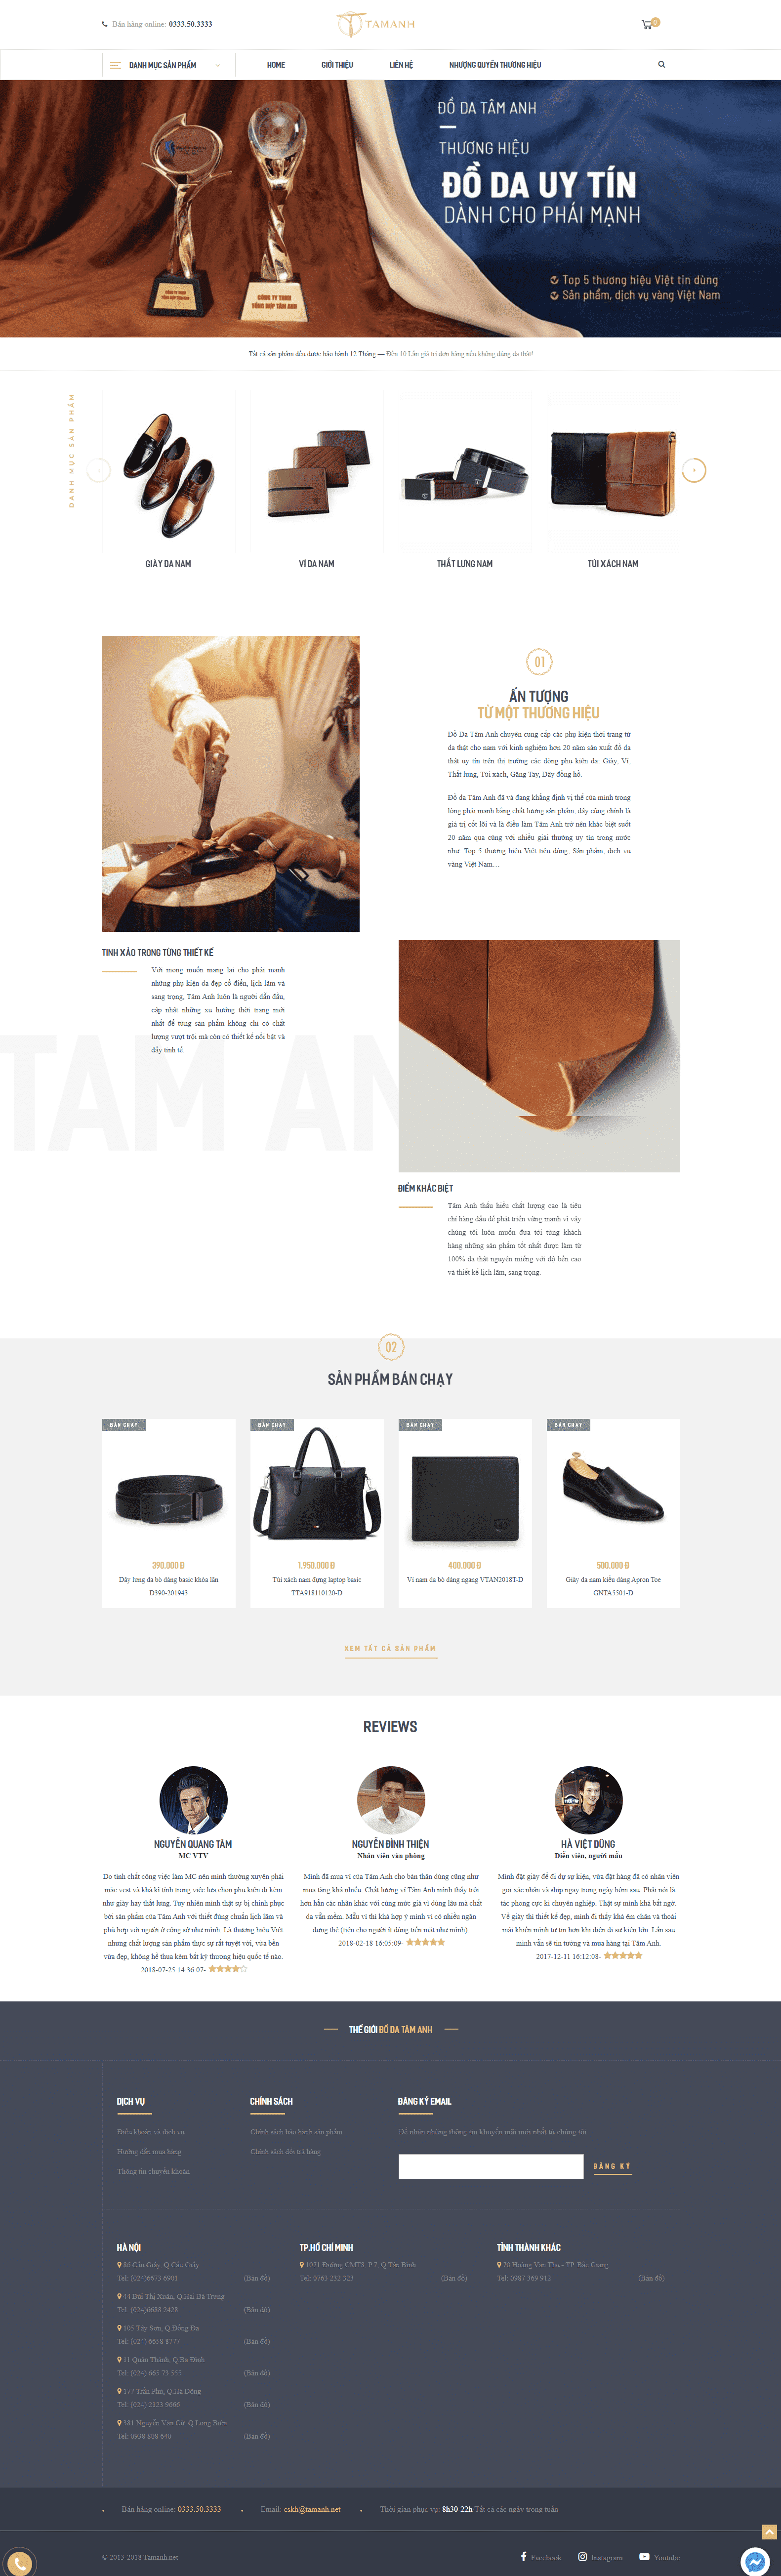 thiết kế web công ty luật cánh cam